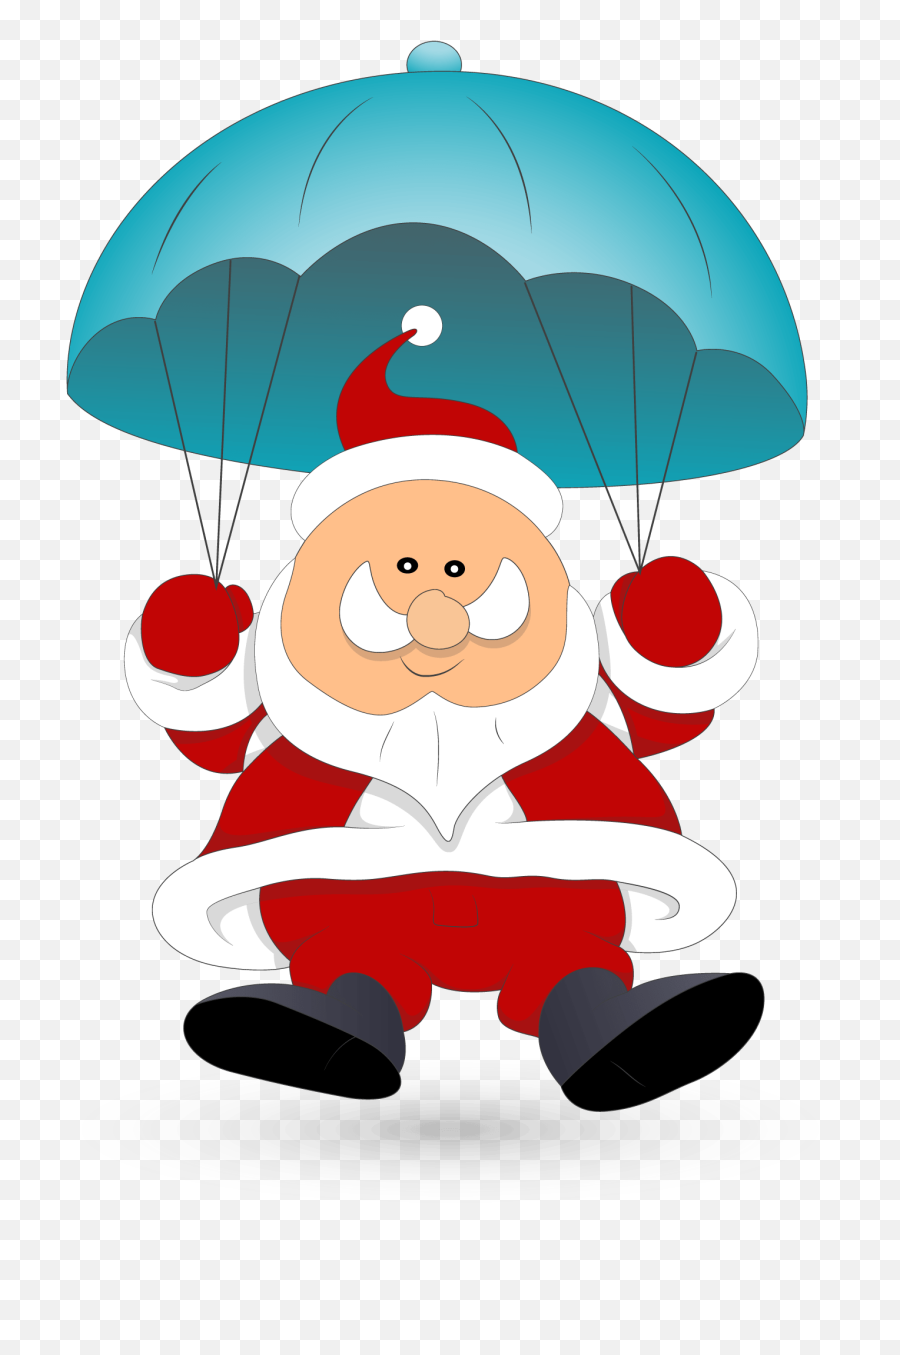 Santa Clipart Parachute - Santa Claus In Parachute Png Clipart Skydiving Santa,Parachute Png